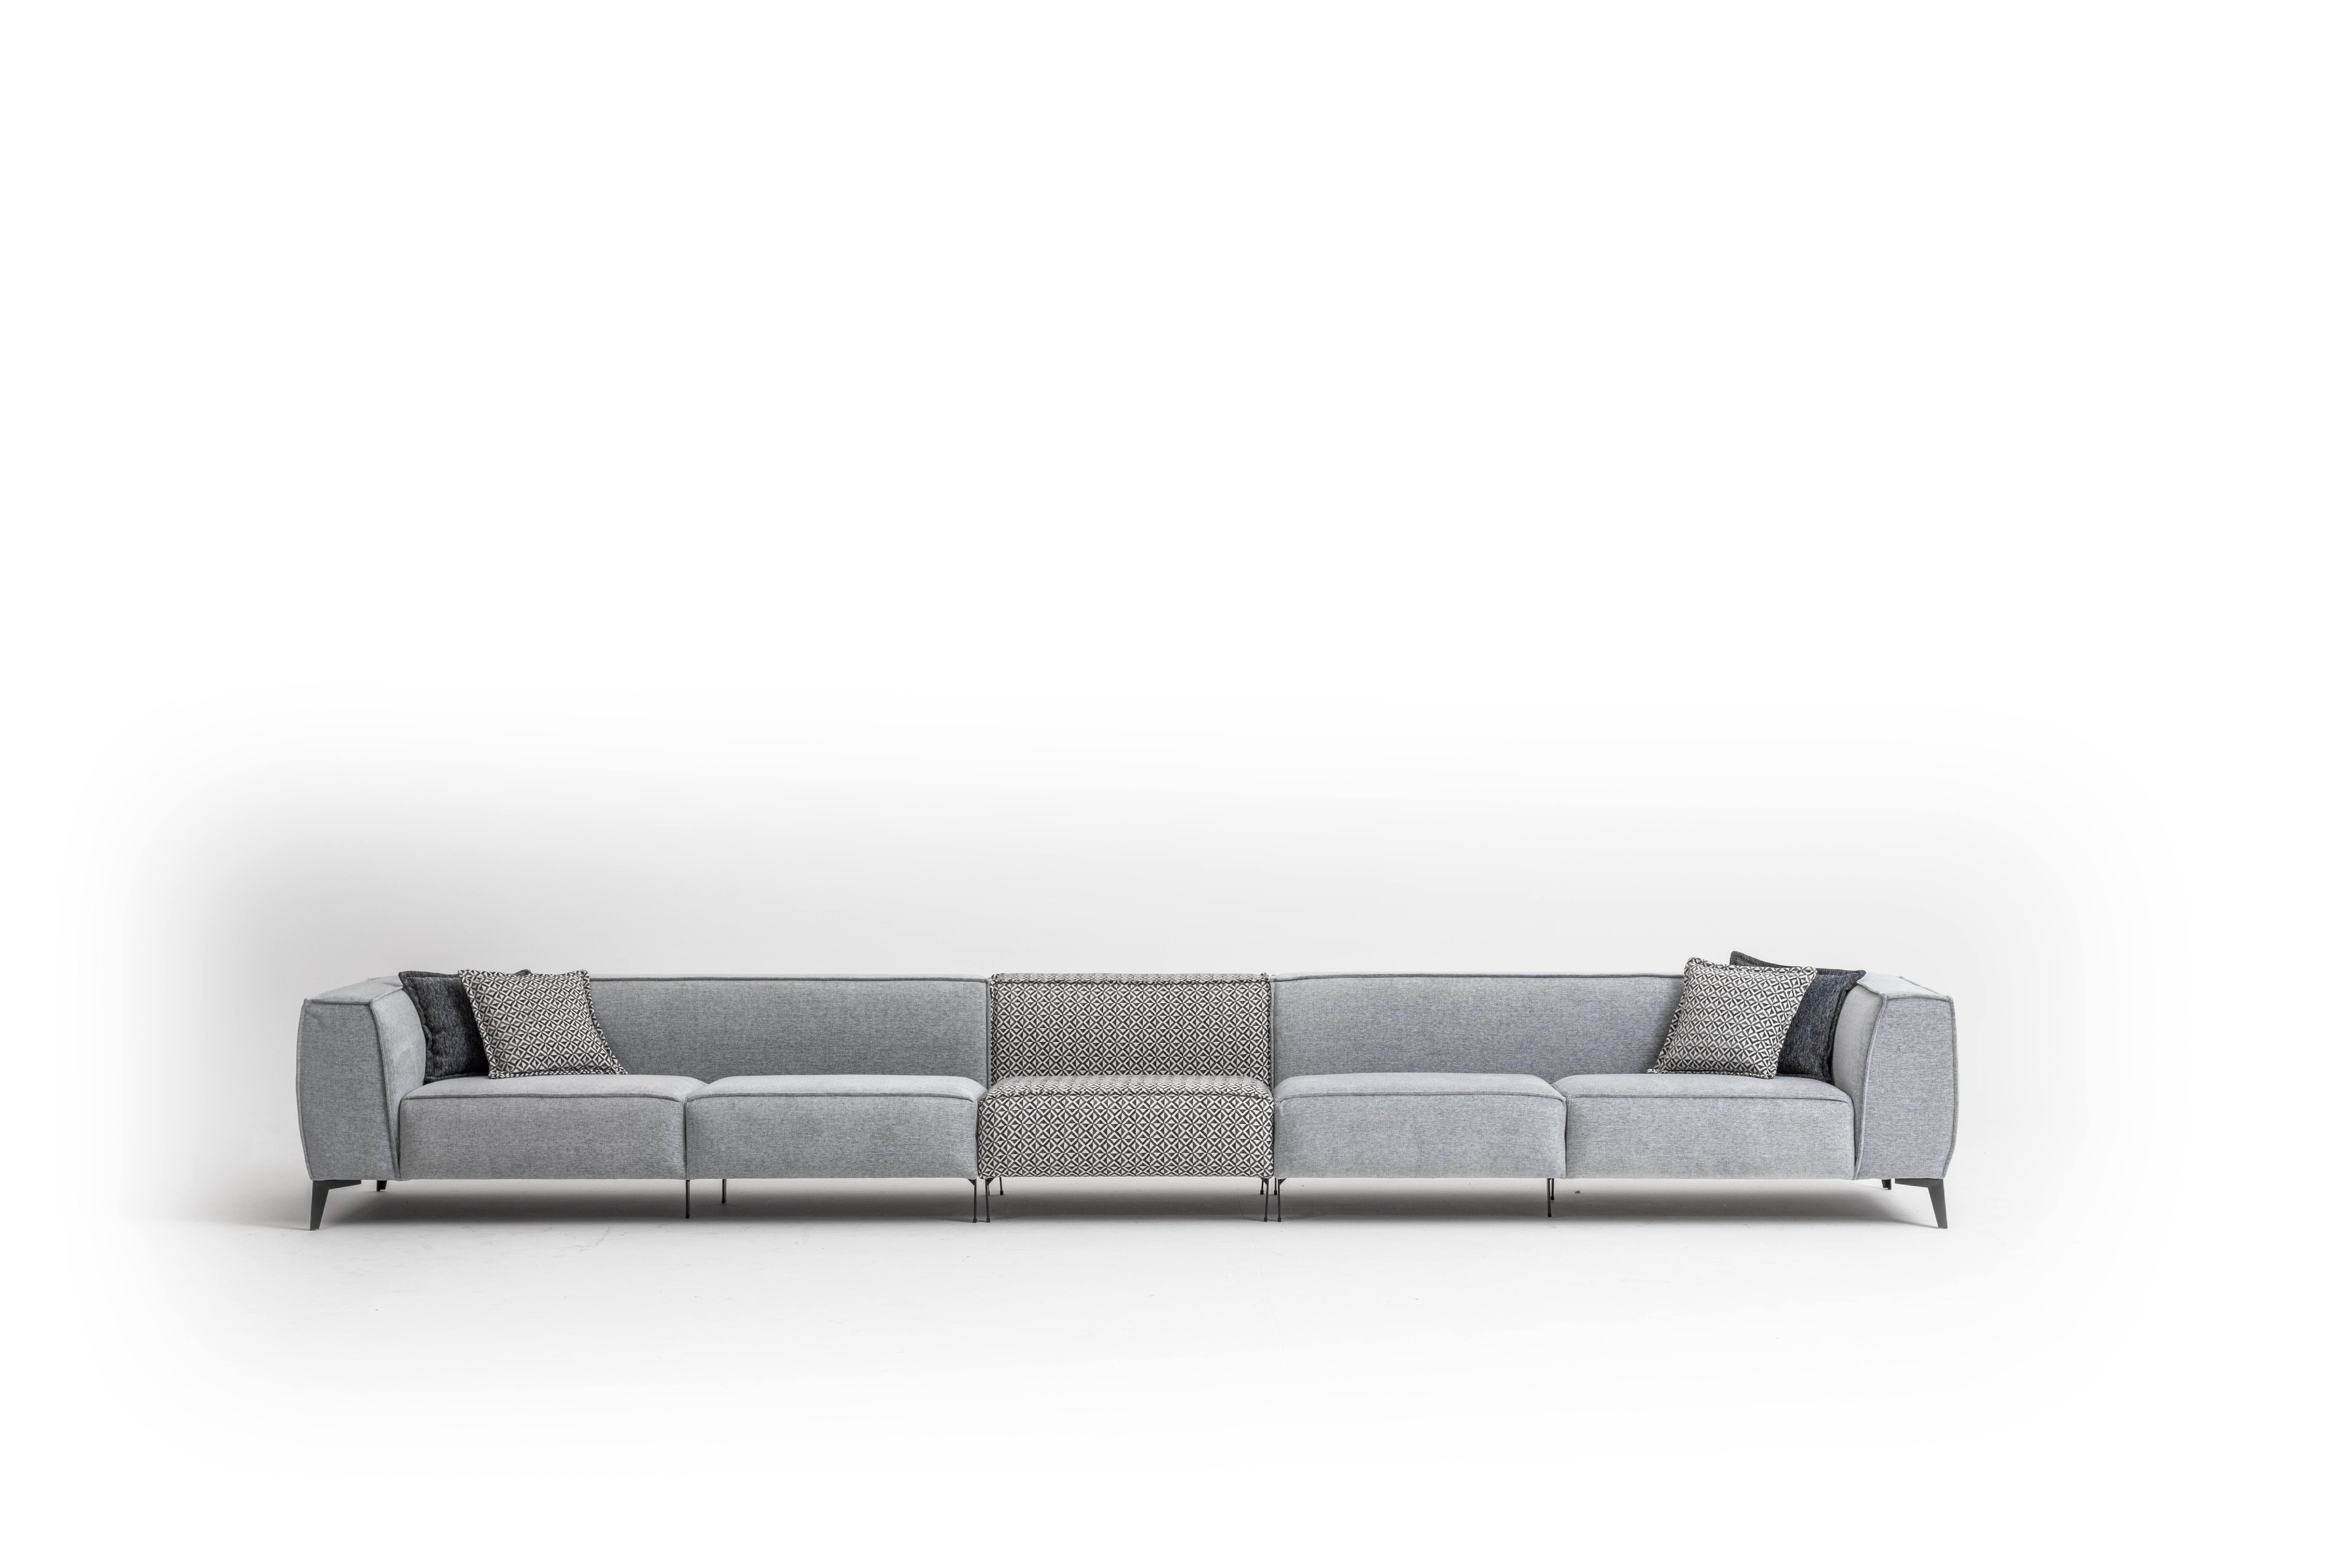 JVmoebel Big-Sofa Grau Big Sofa 8 Sitzer Italienische xxl Couchen Sofas Möbel Textil, Made in Europe